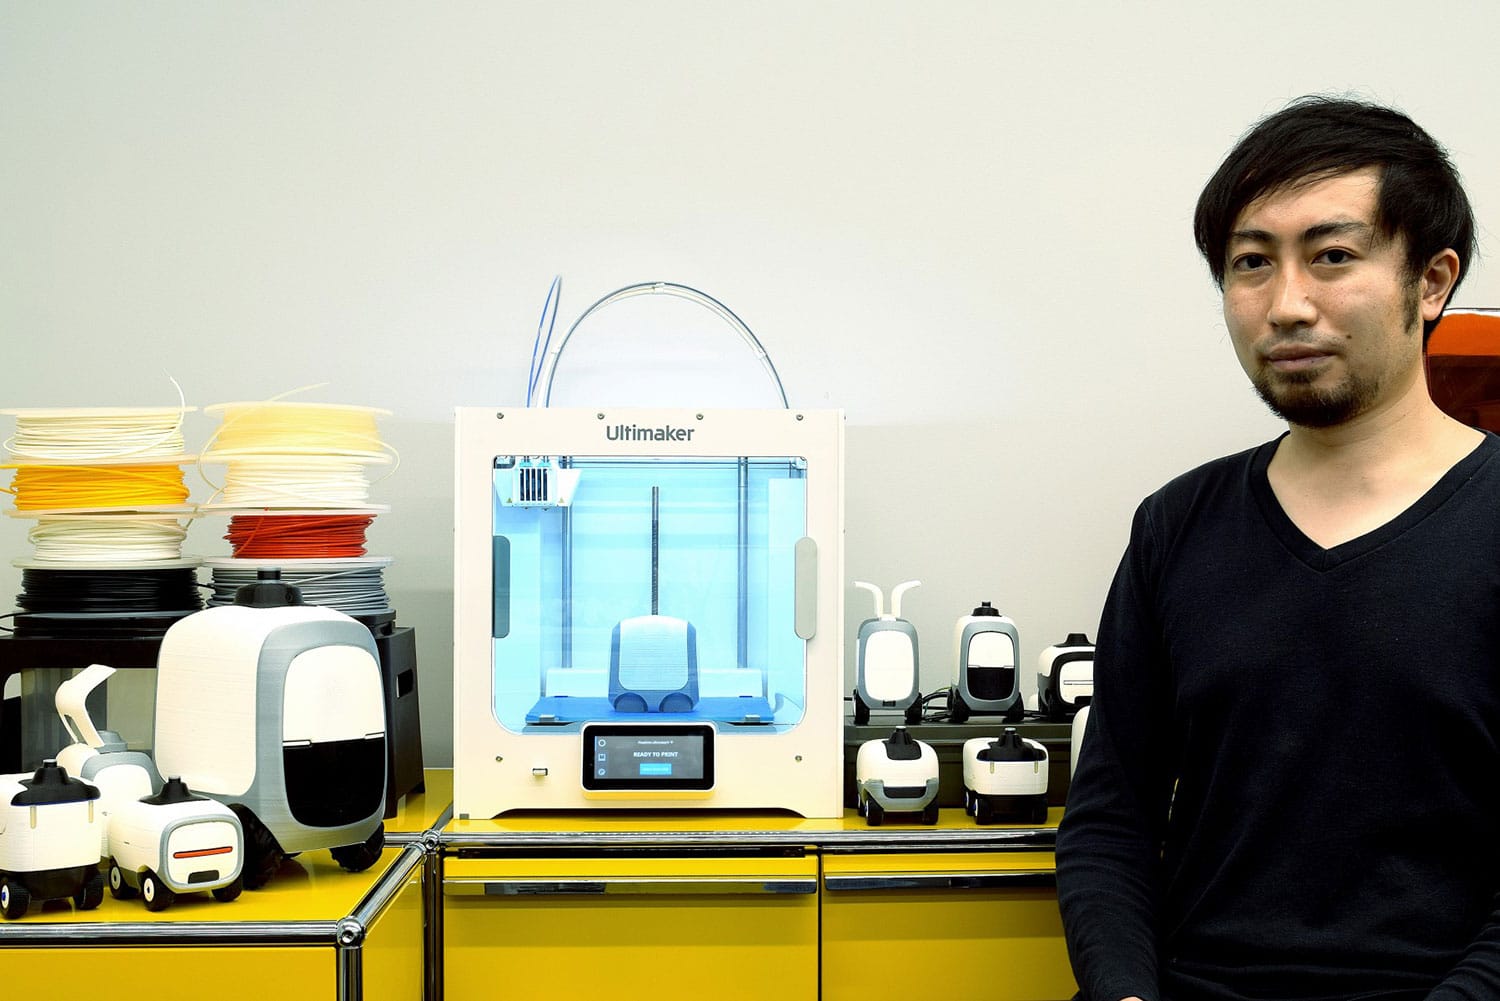 Final Aim uses 3D printing to develop last mile autonomous delivery robot.